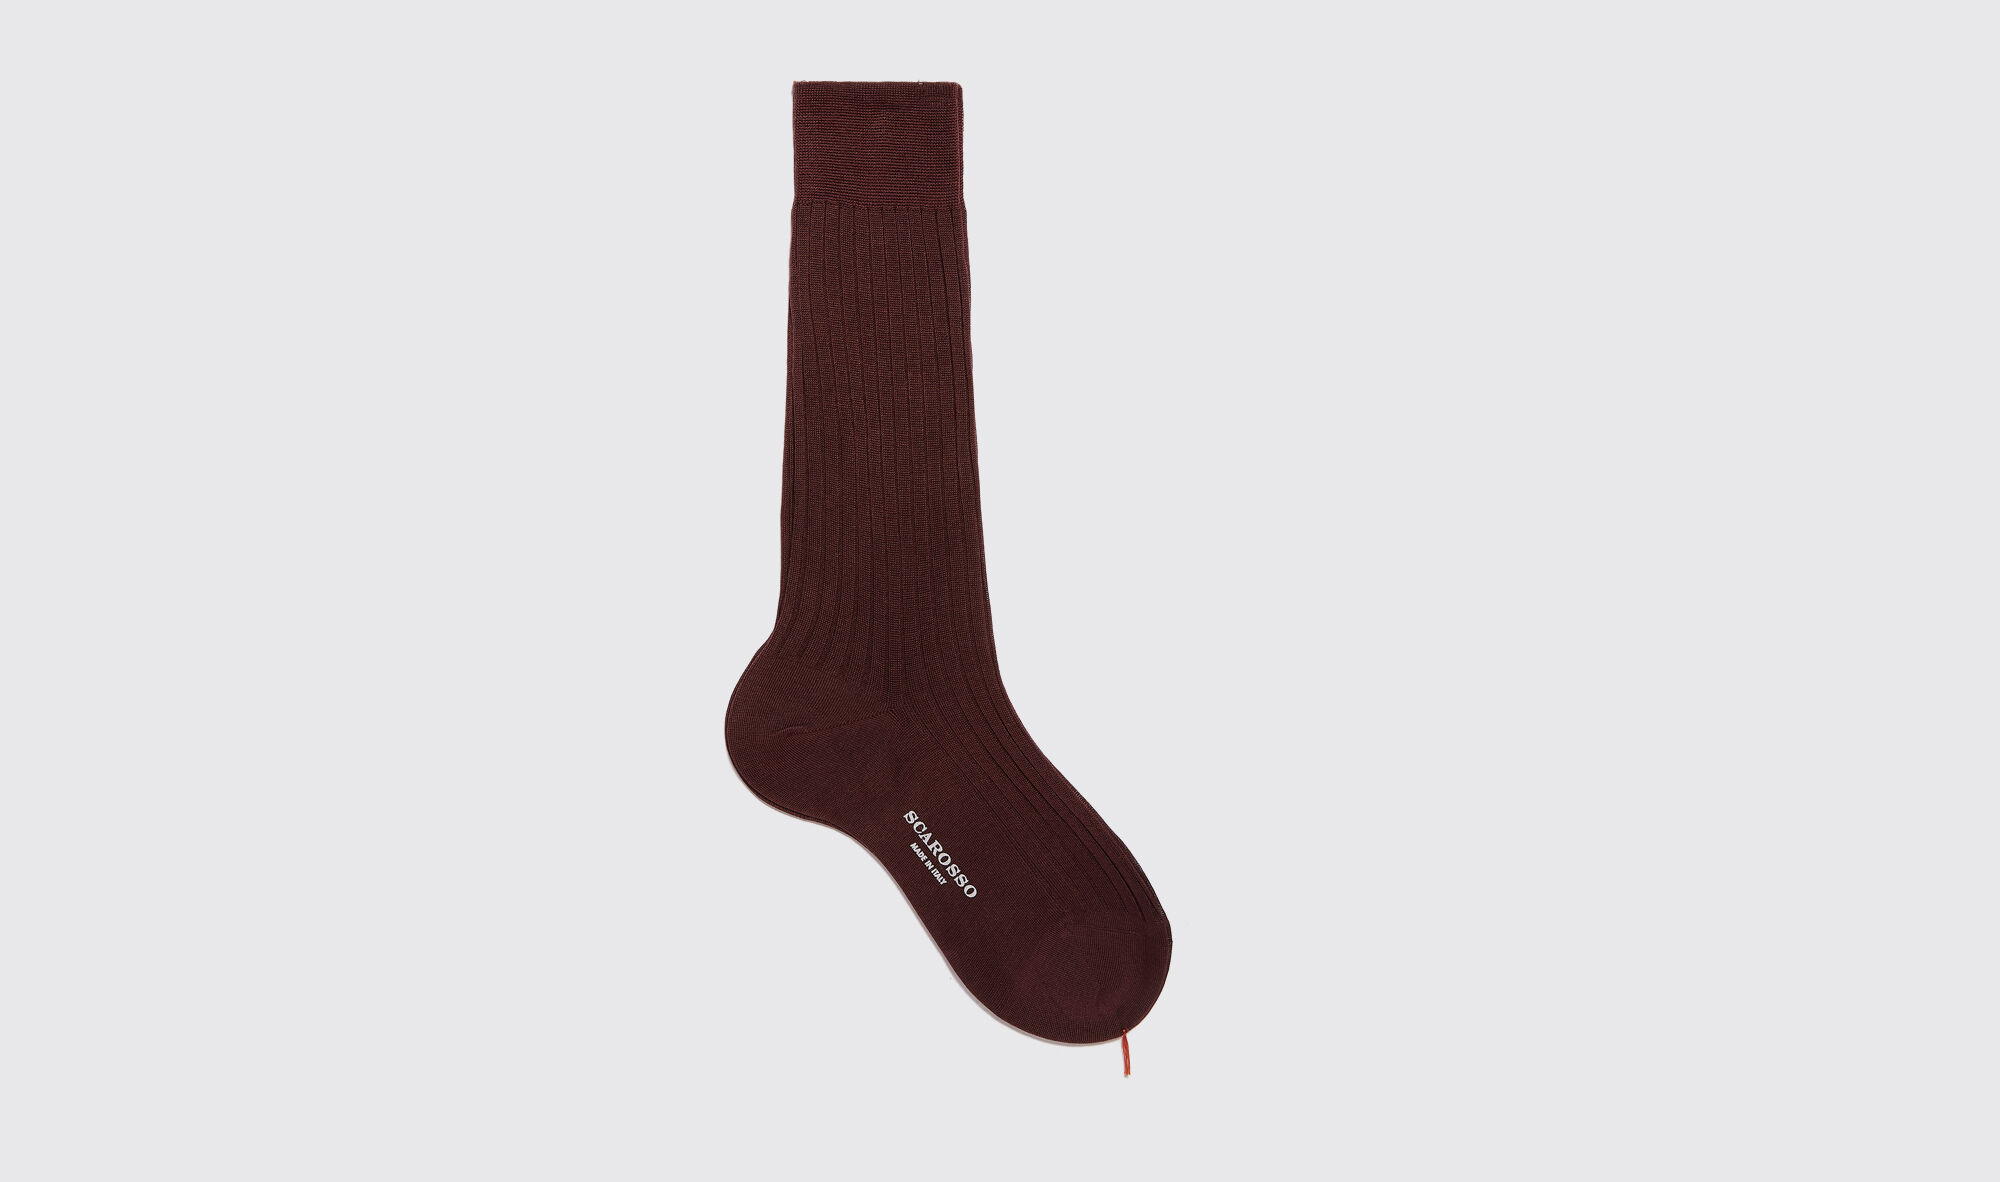 Scarosso Burgundy Cotton Calf Socks - Uomo Calze Borgogna - Cotone 44-45